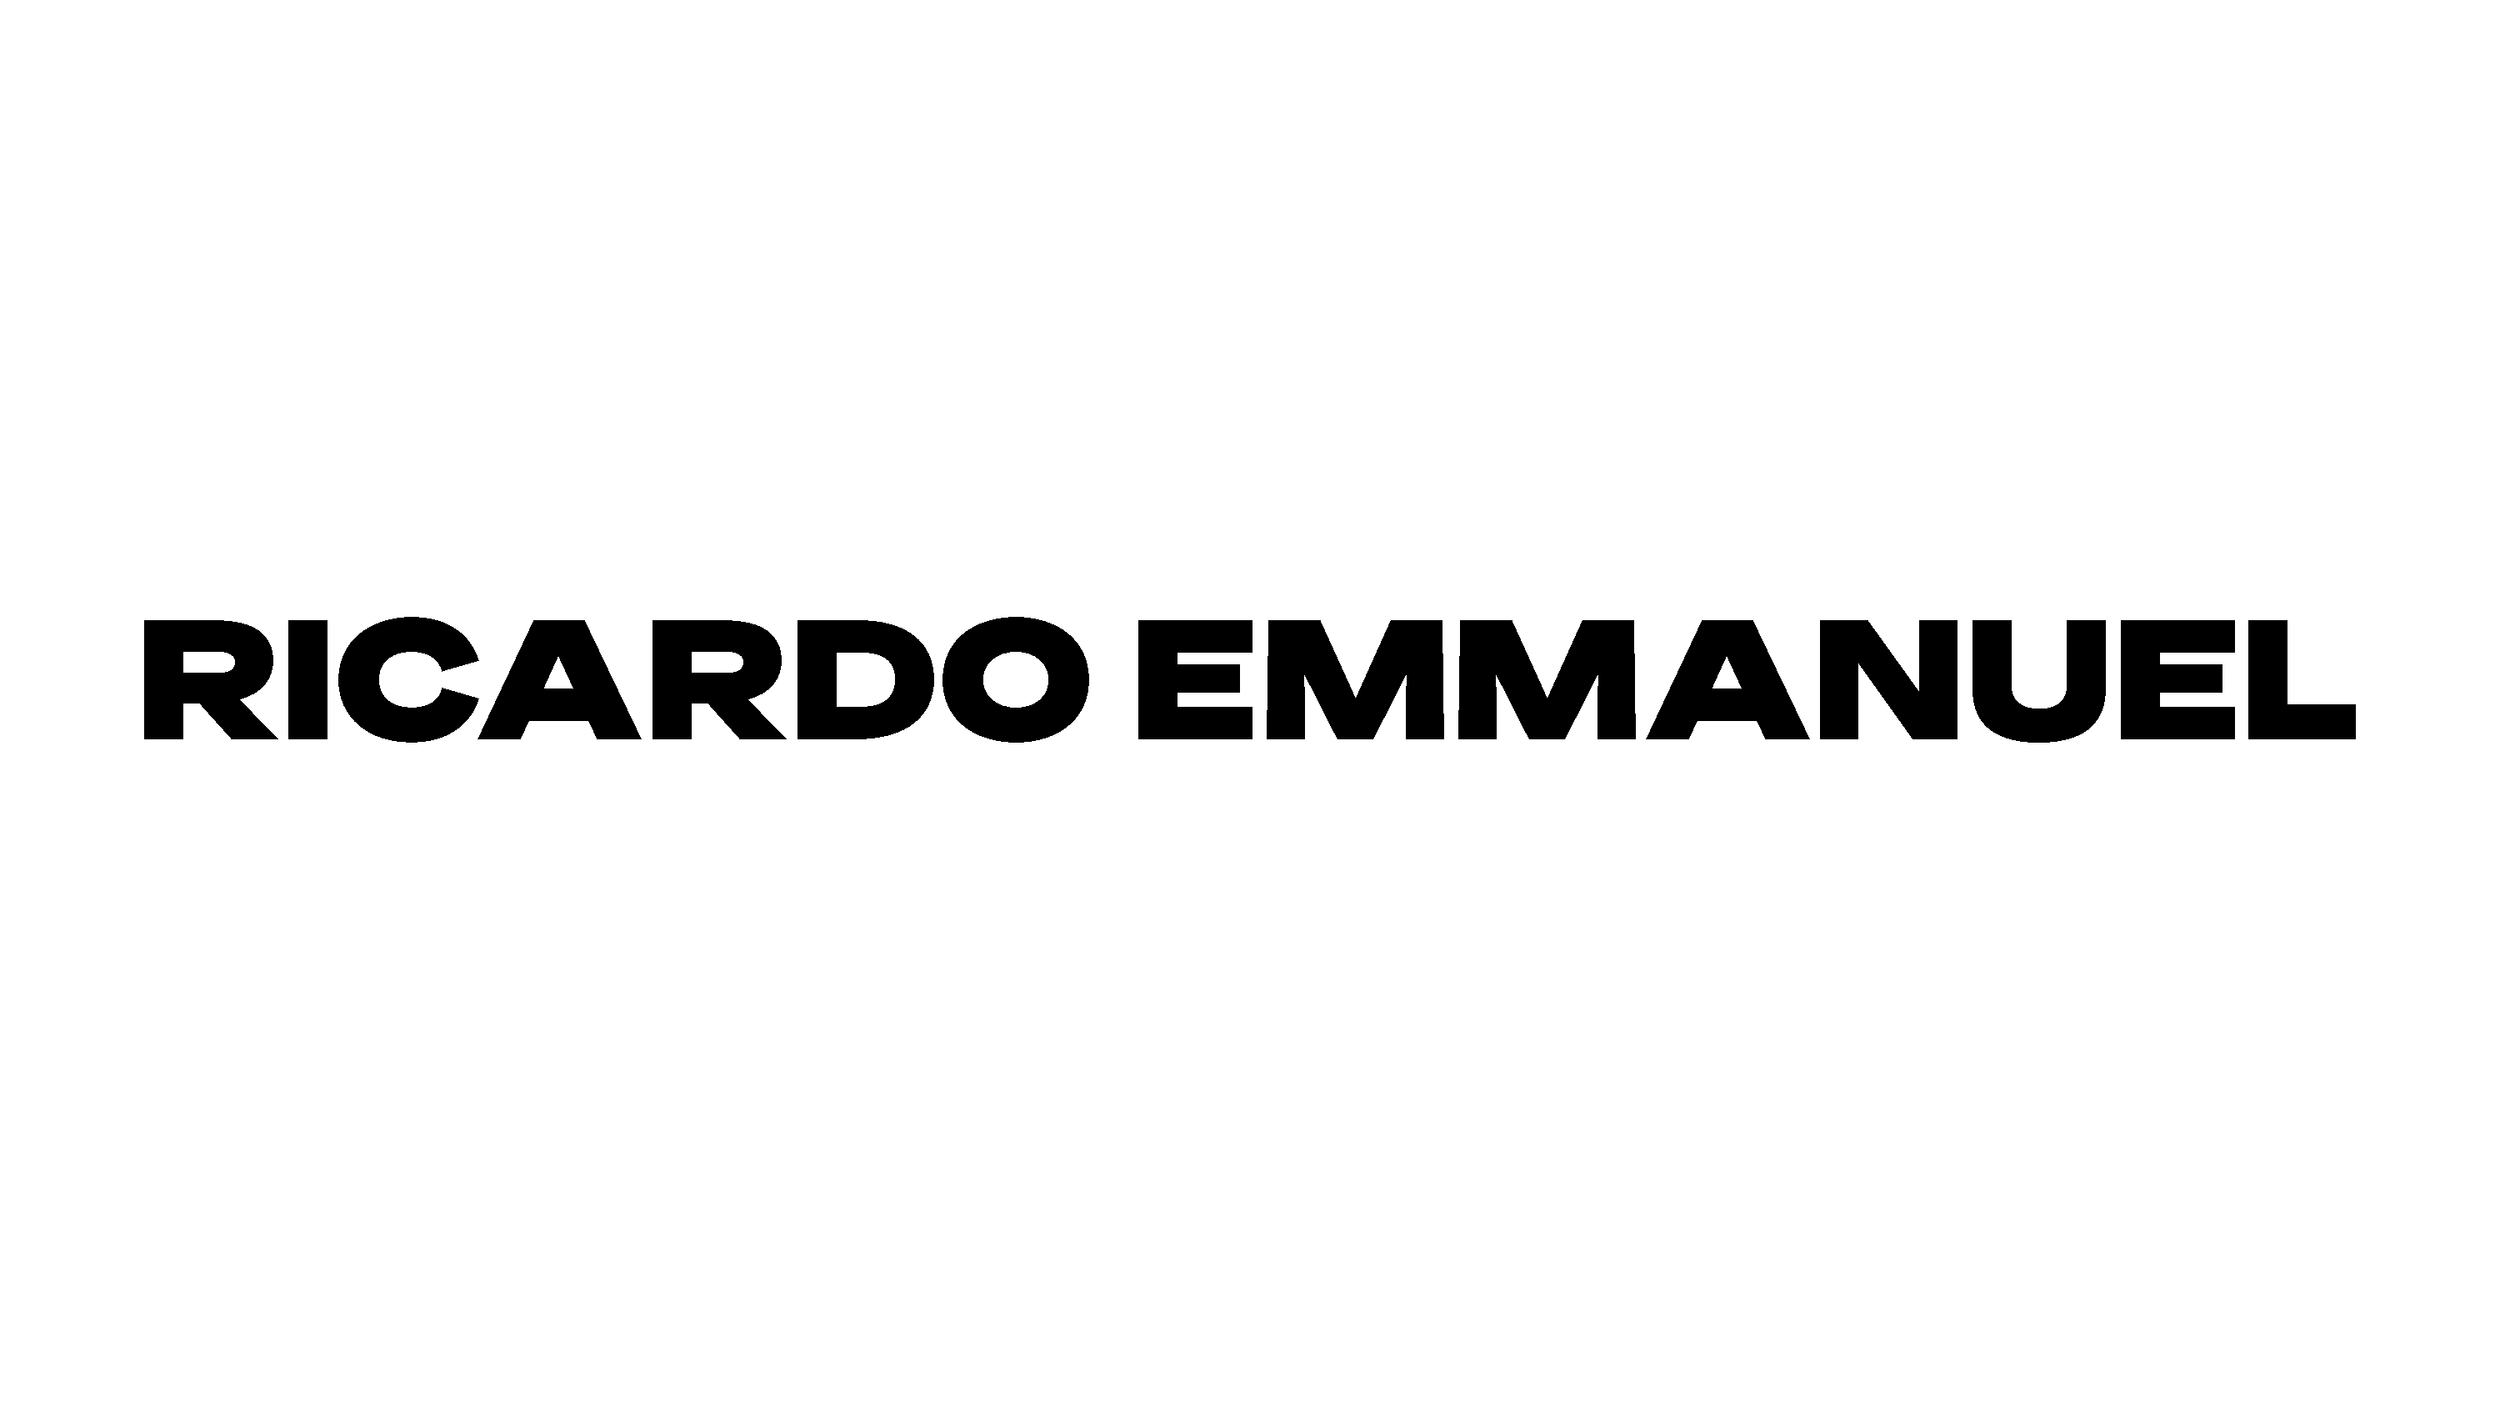 RICARDO EMMANUEL